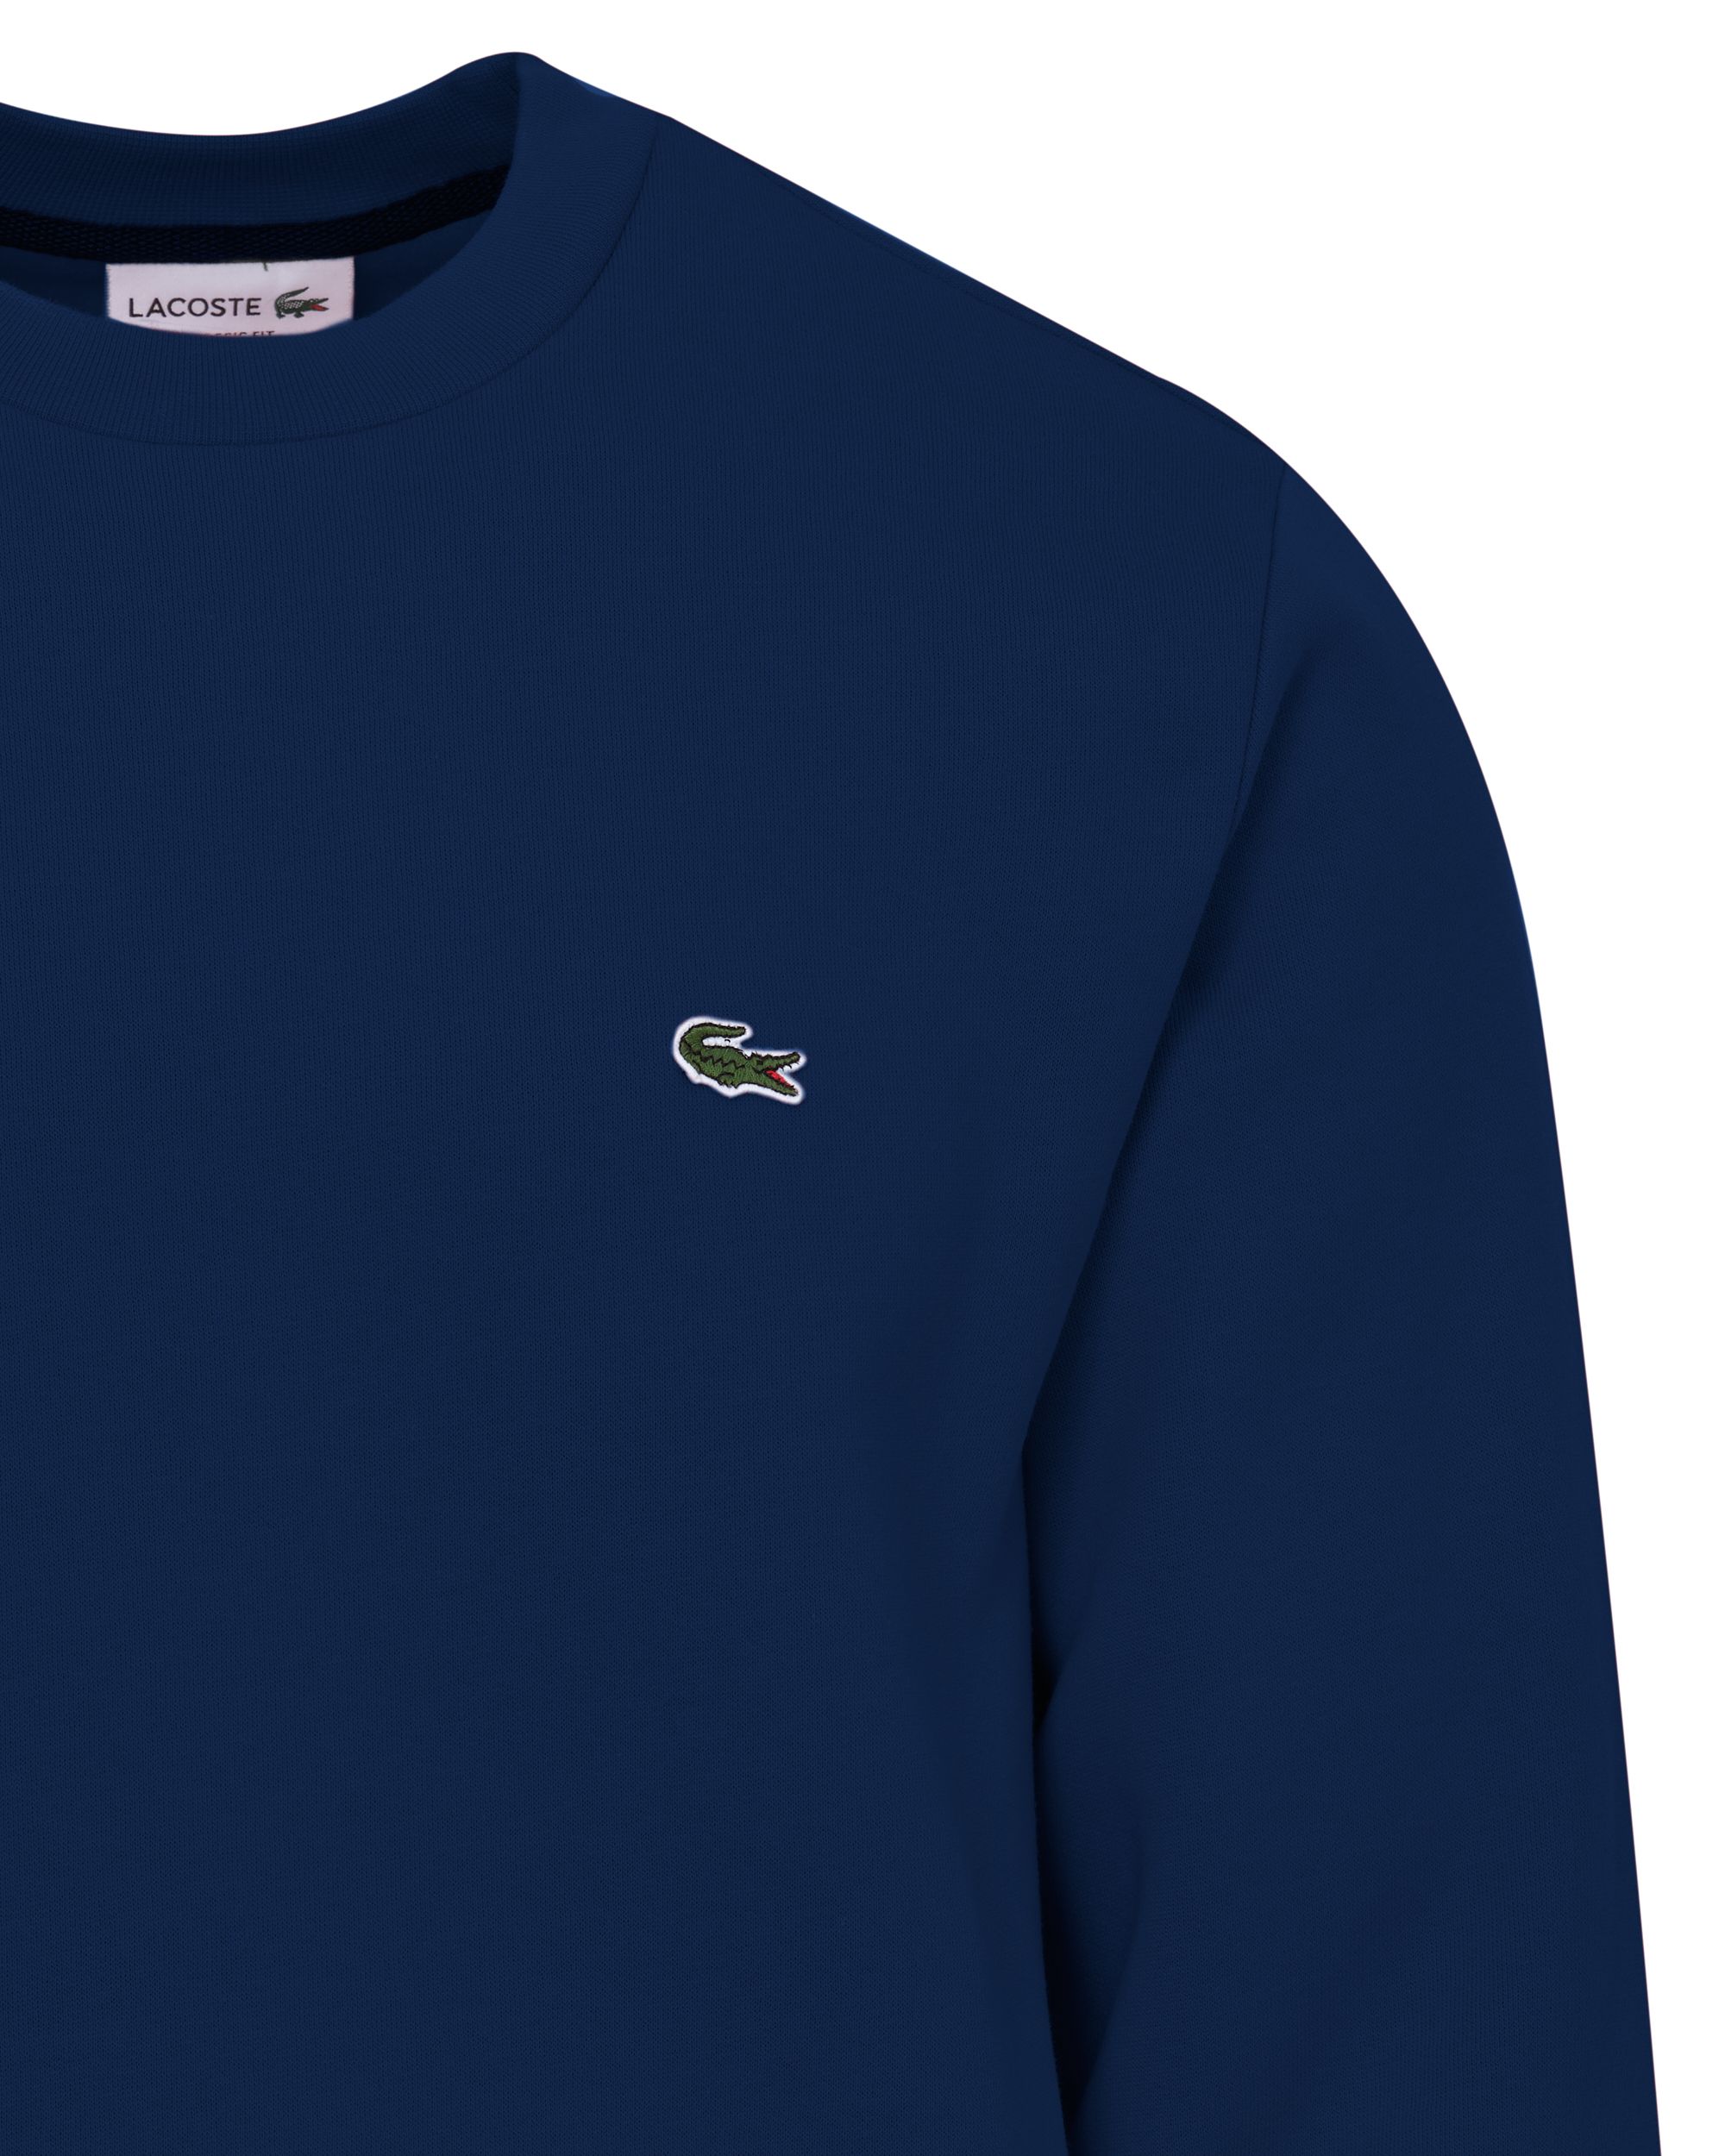 Lacoste Sweater Donker blauw 084073-001-L